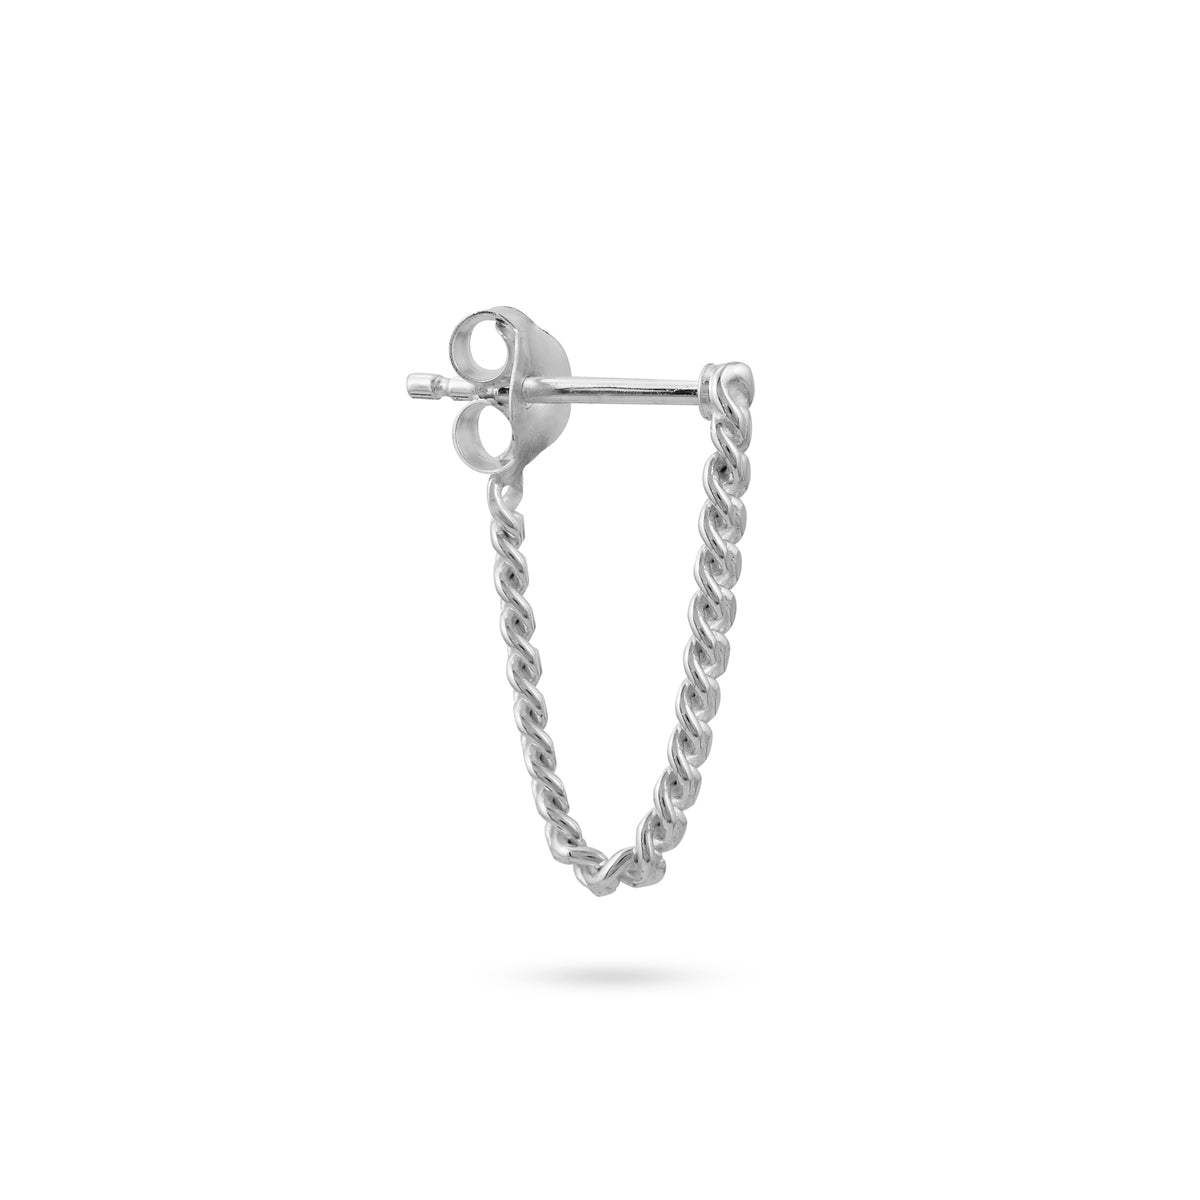 vika jewels small chain earring earrings men women handmade bali recycled sterling silver jewellery jewelry 